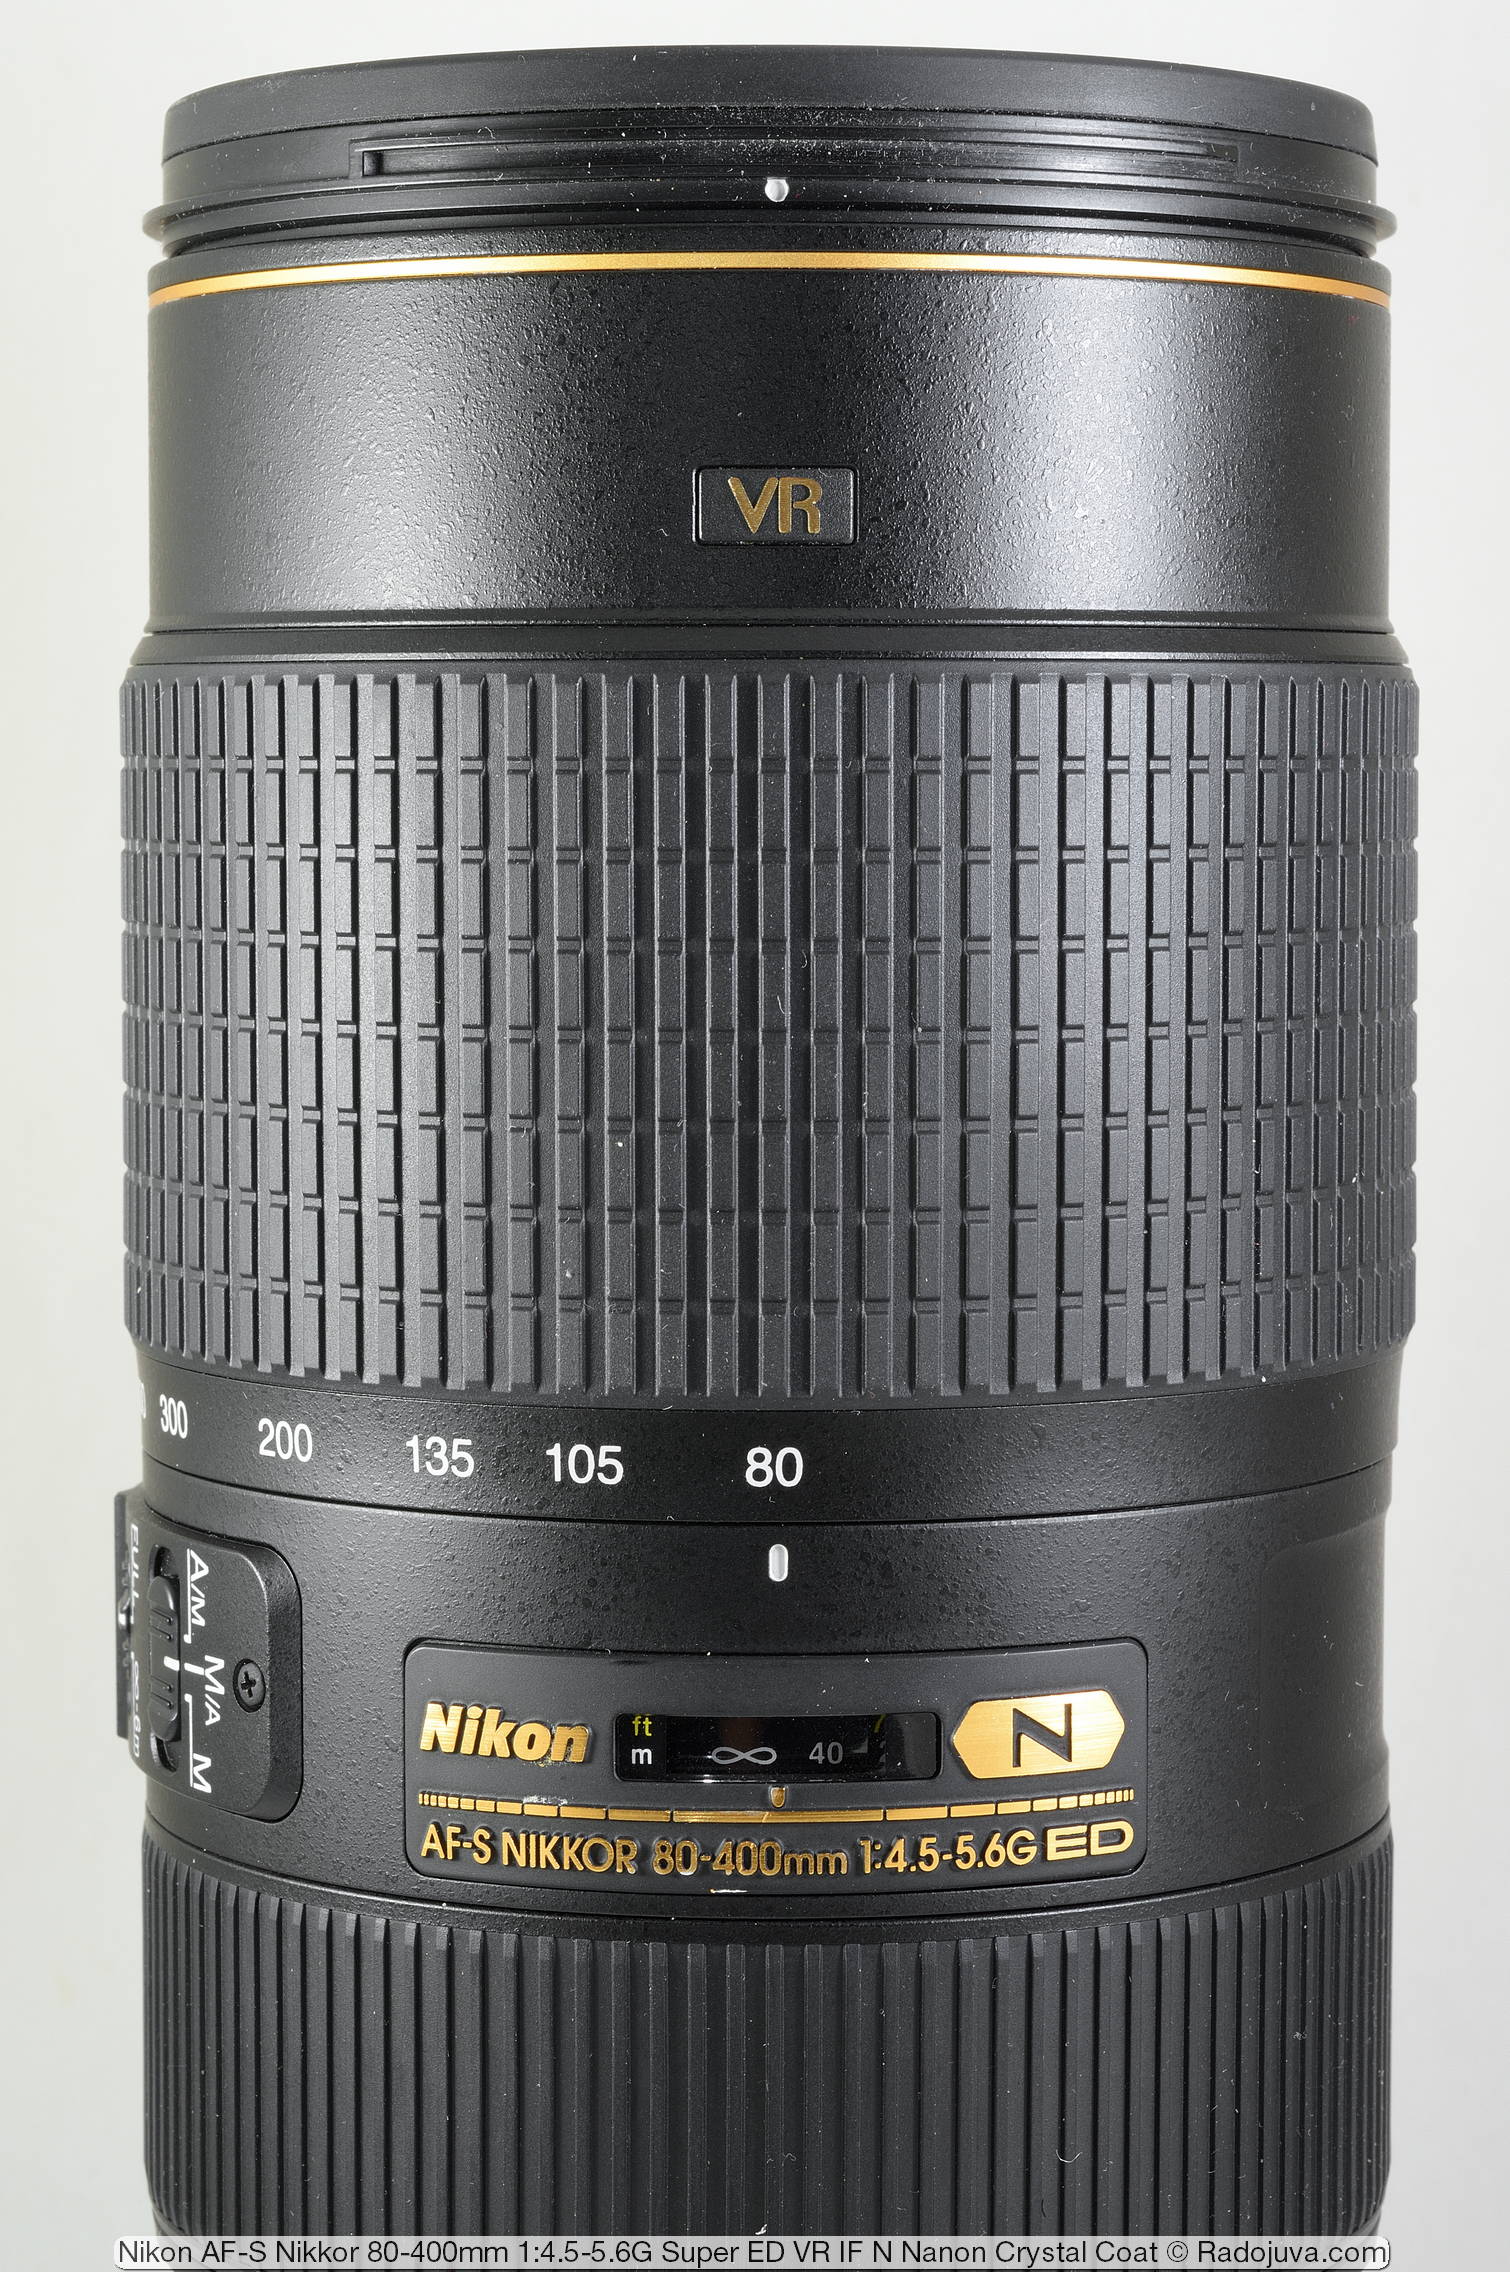 Nikon AF-S Nikkor 80-400mm 1:4.5-5.6G Super ED VR IF N Nano Crystal Coat